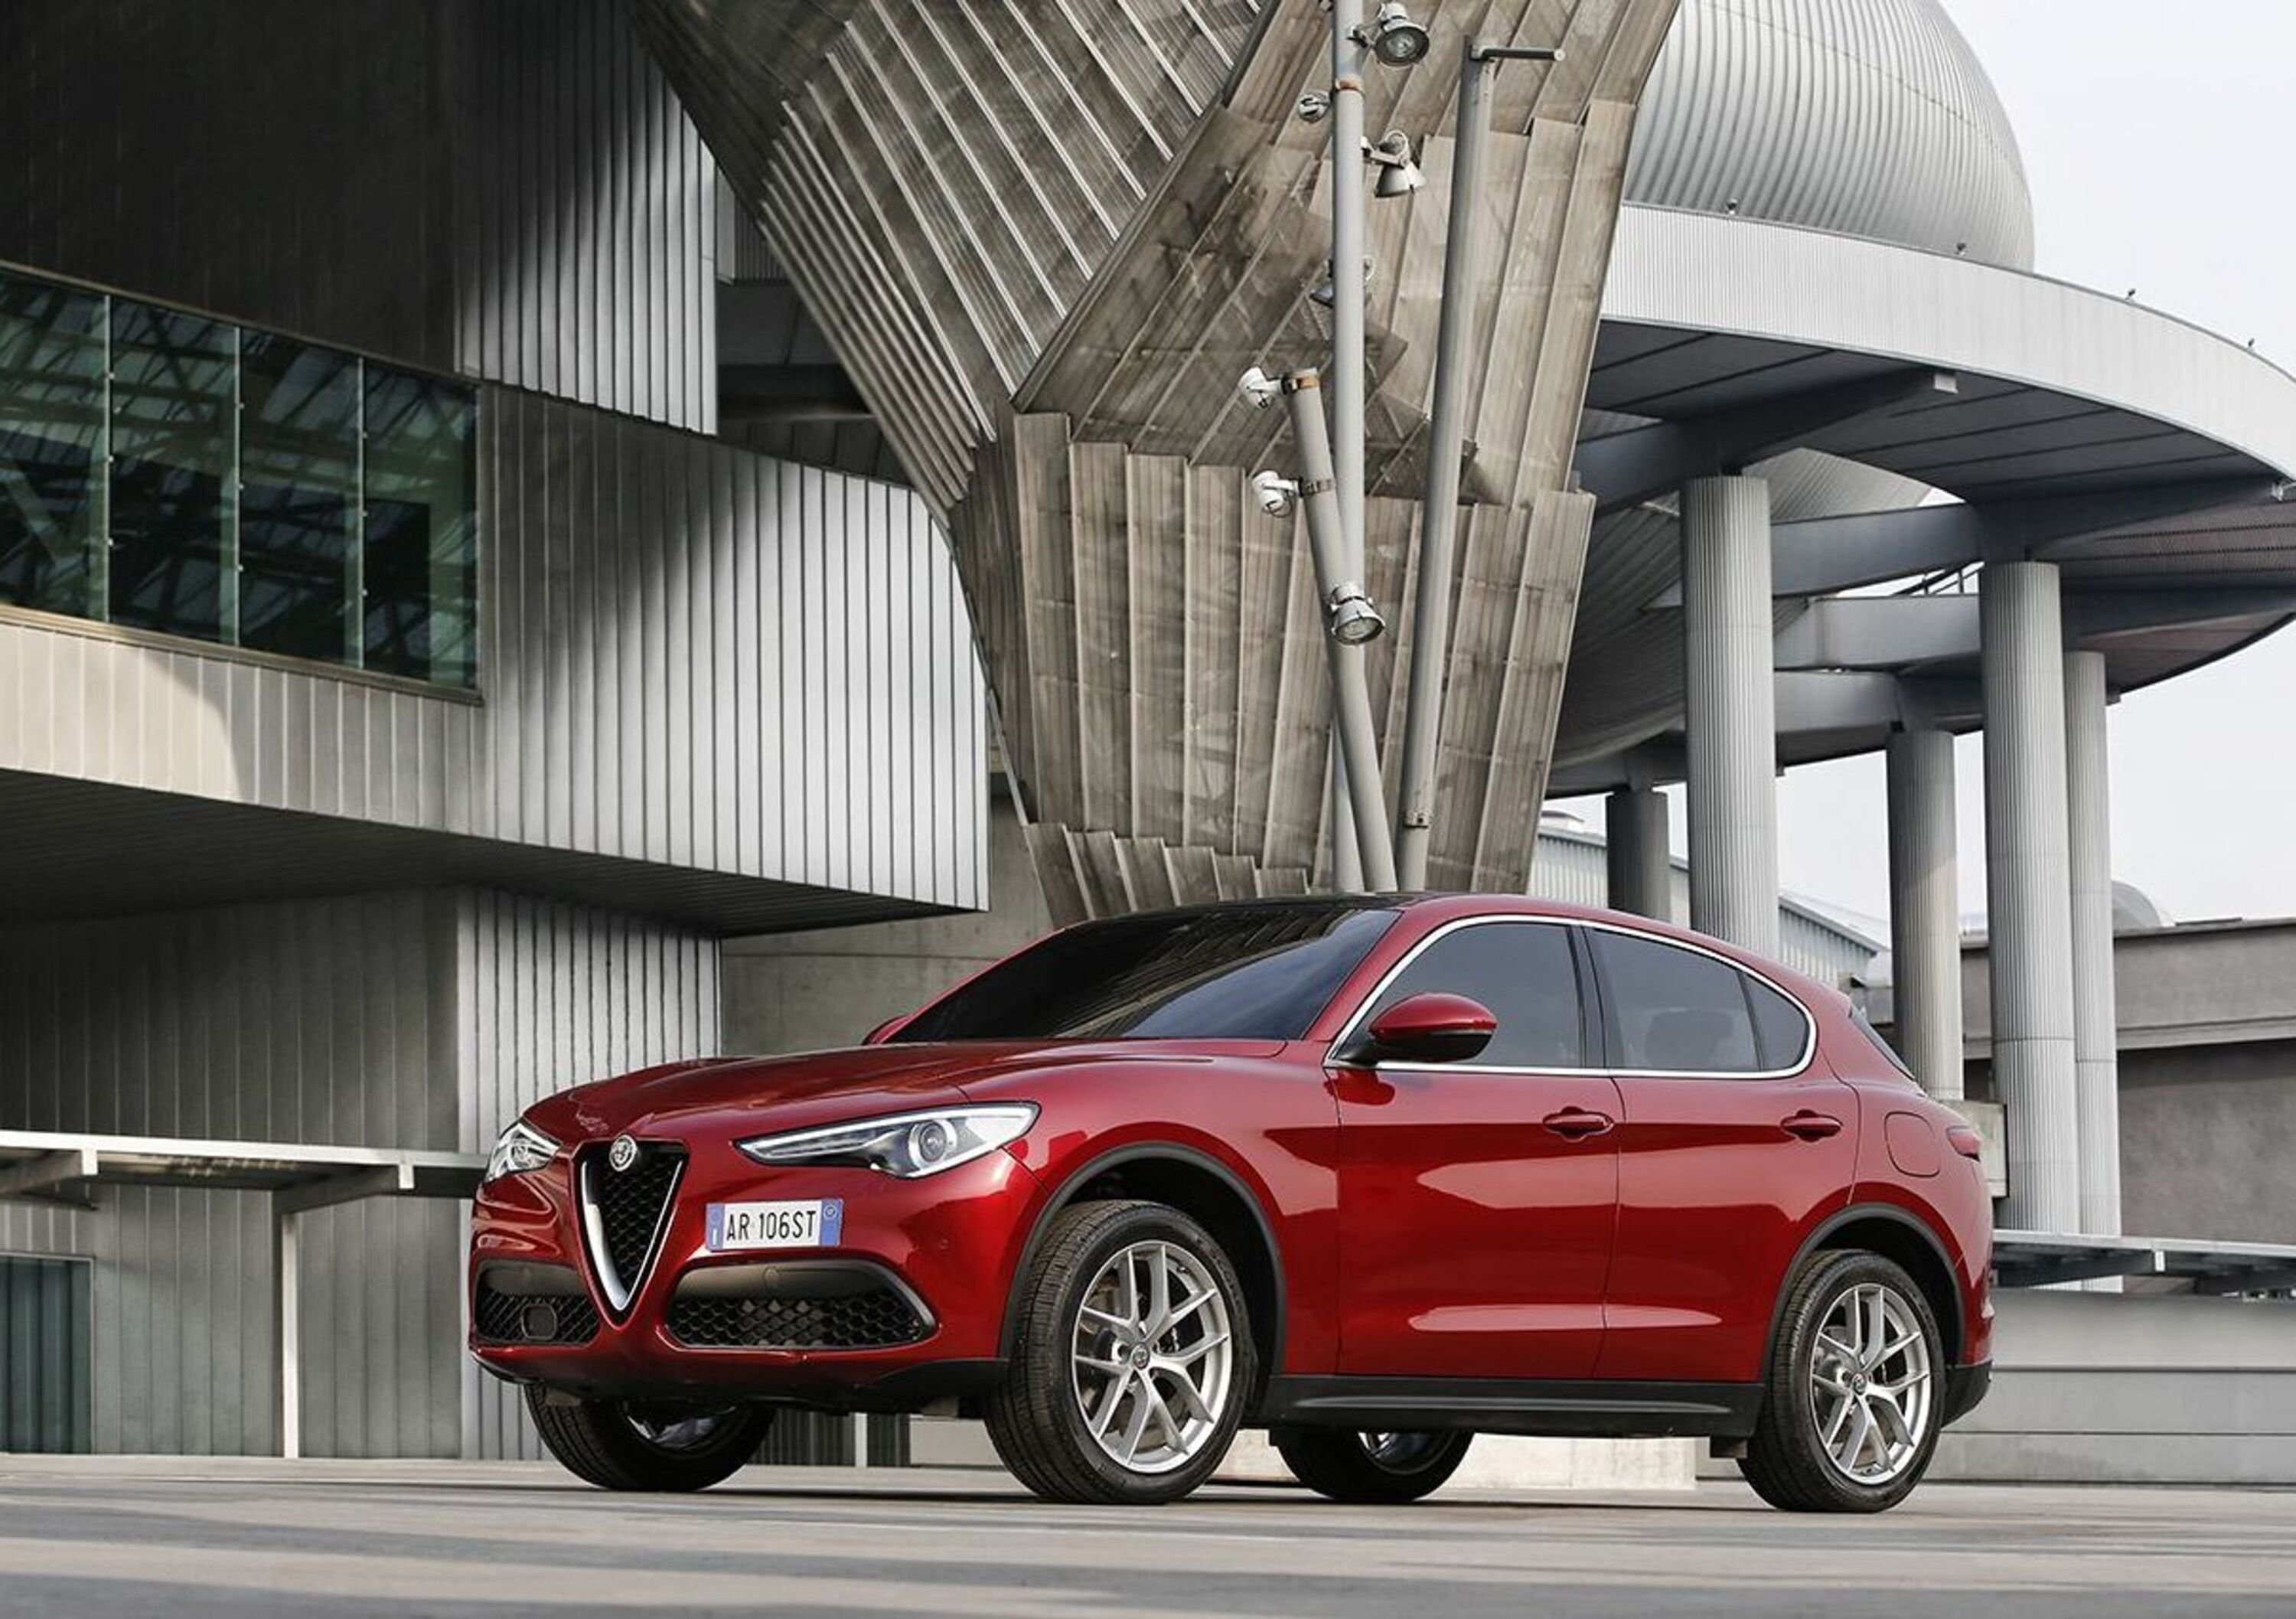 Alfa Romeo, -50% delle vendite in Italia nei primi otto mesi del 2019